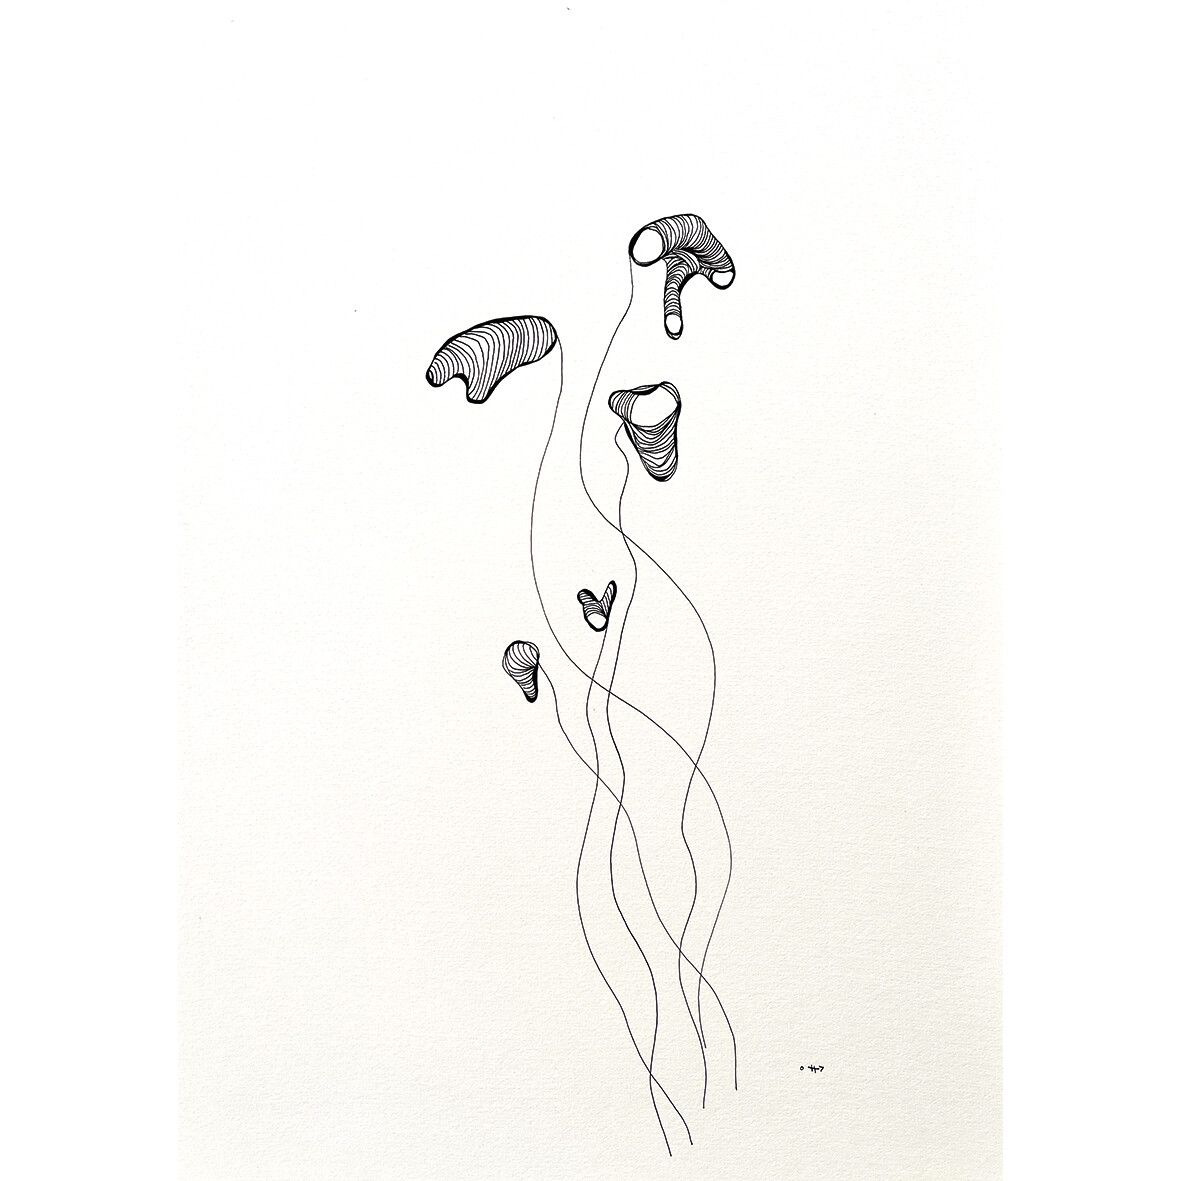 Sillyfish - Pentekening uit de serie "Inner Strength"